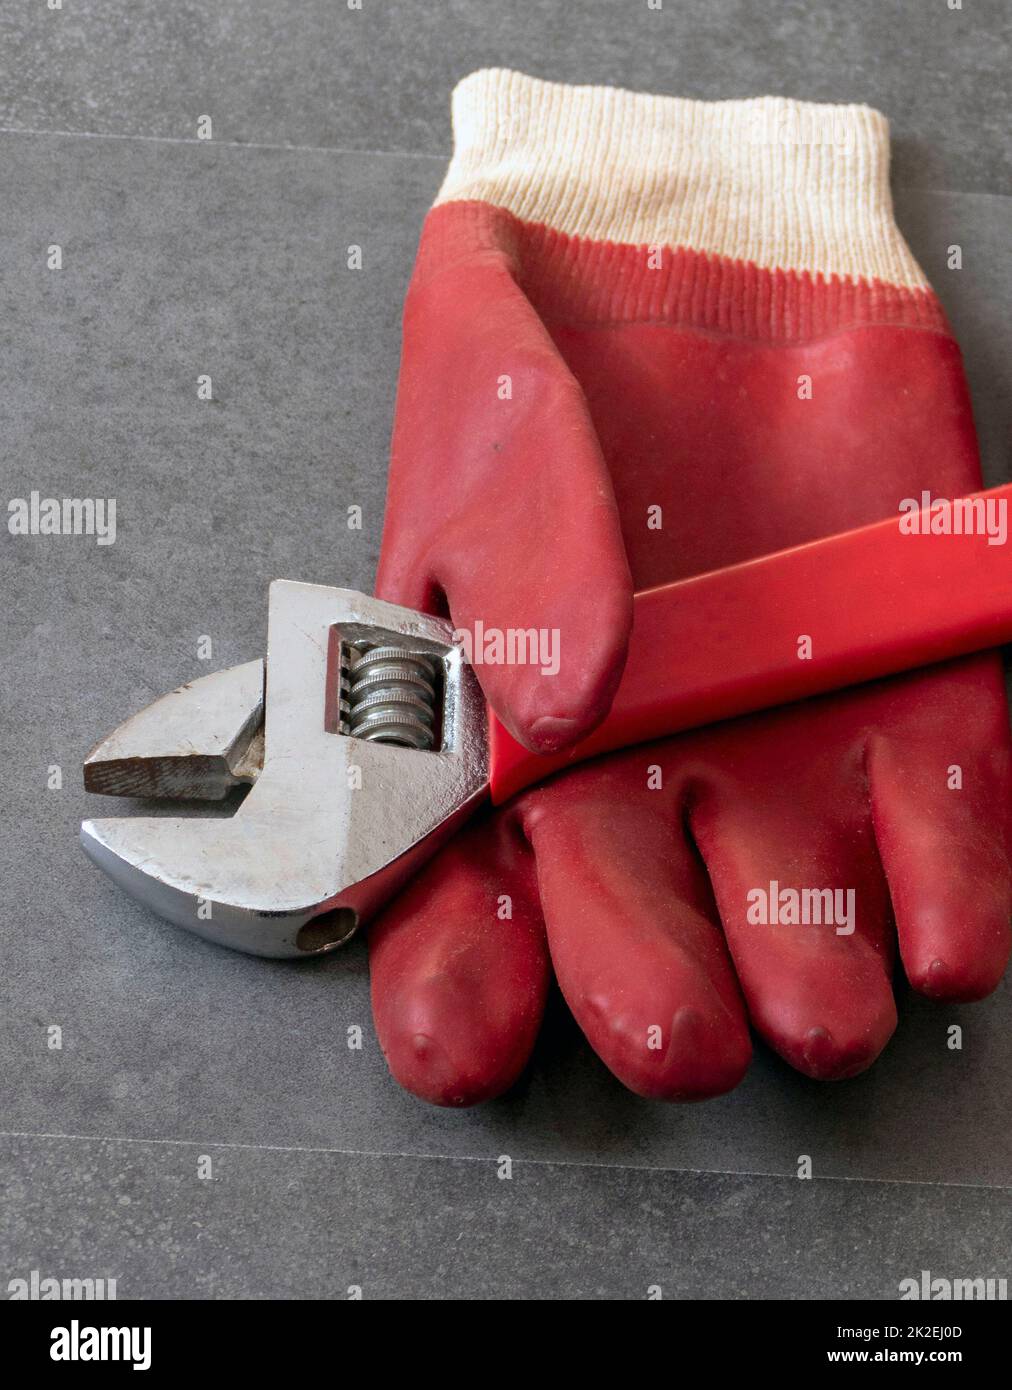 Por motivos de seguridad en el trabajo, es necesario trabajar con guantes, una llave, guantes gruesos de plástico sobre el suelo Foto de stock